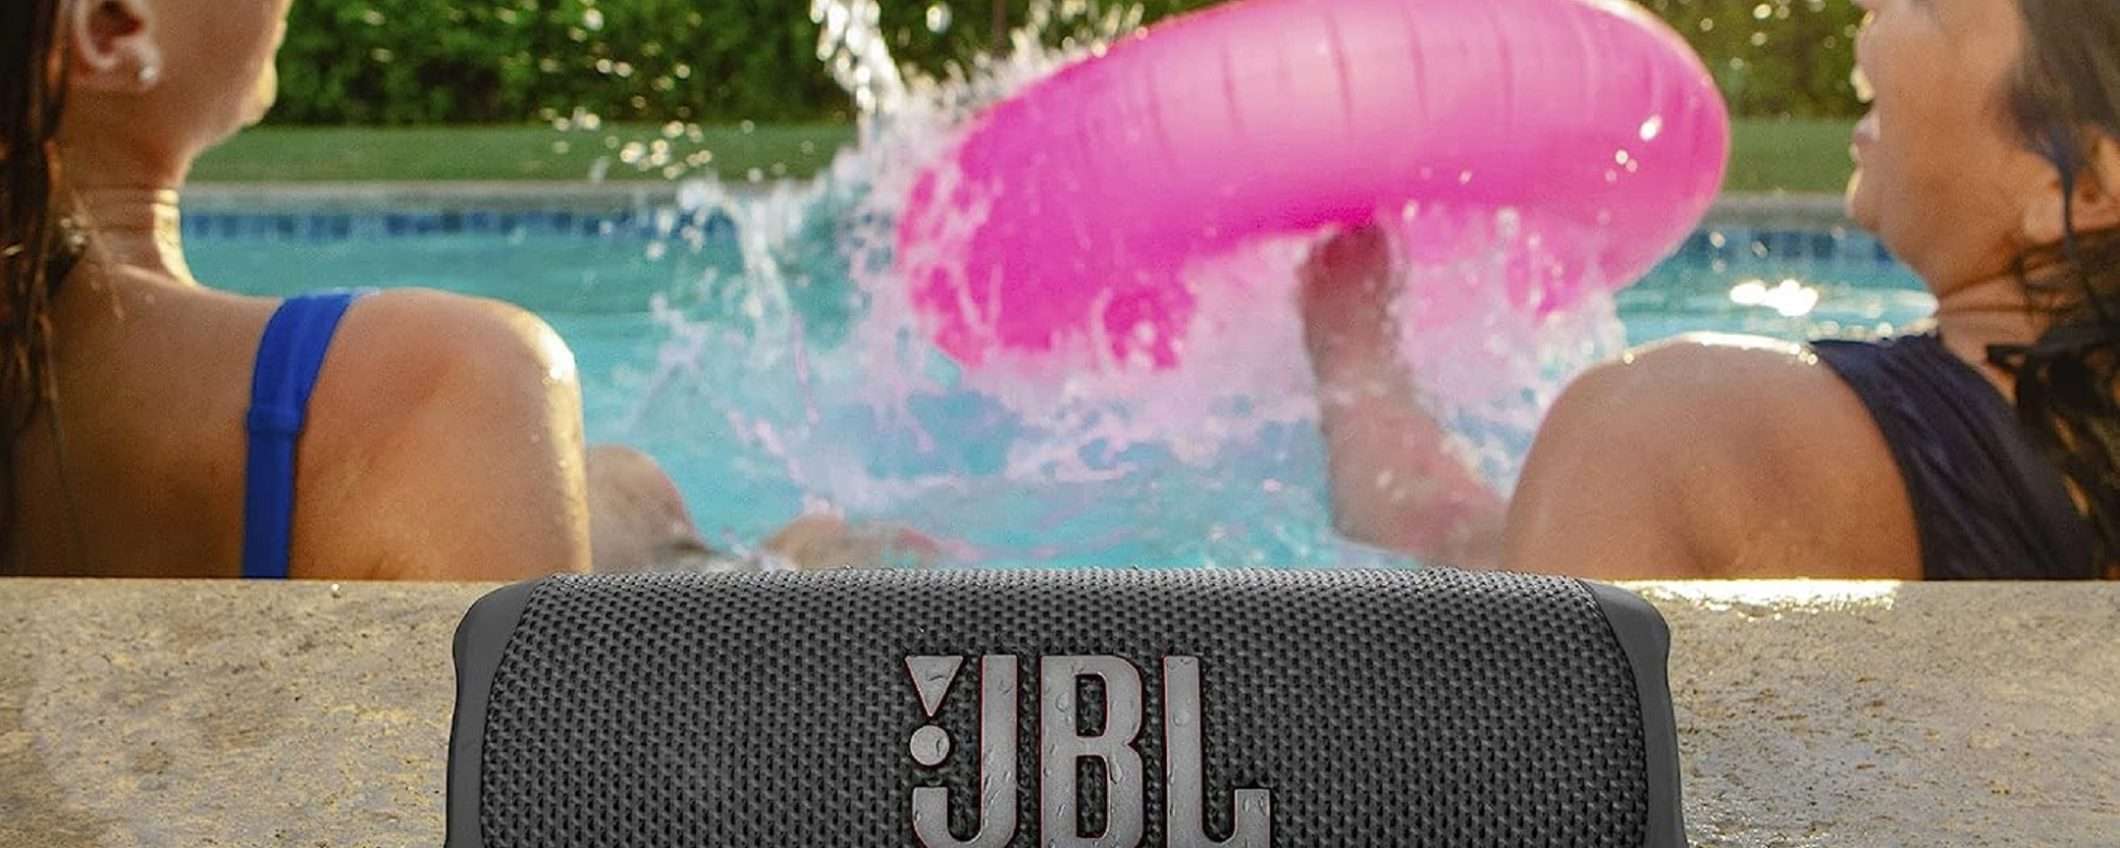 Speaker Bluetooth JBL Flip 6 a soli 99€ su Amazon: sconto incredibile del 33%